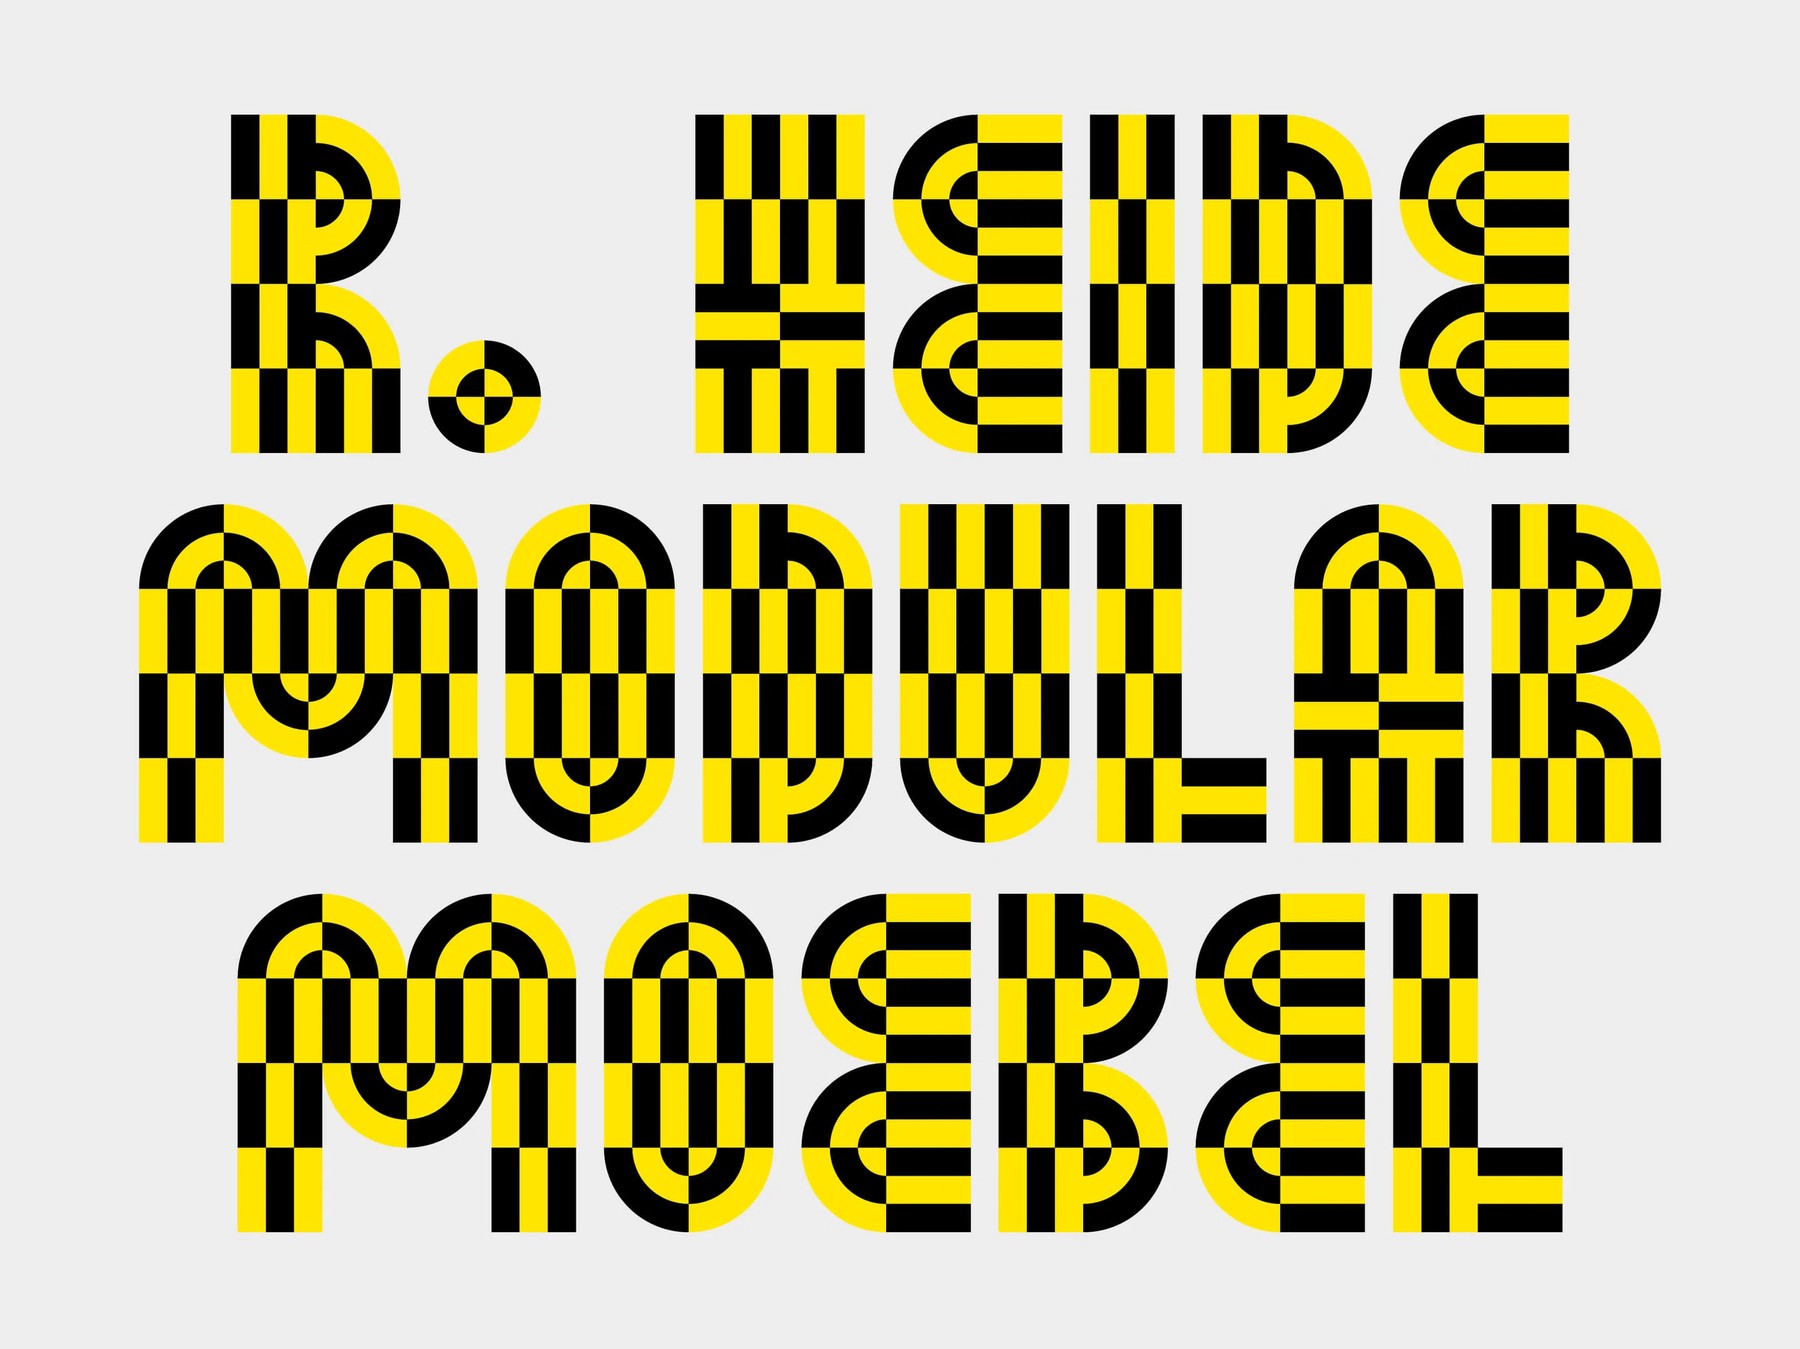 Studio Marlon Ilg: Multi-layer font